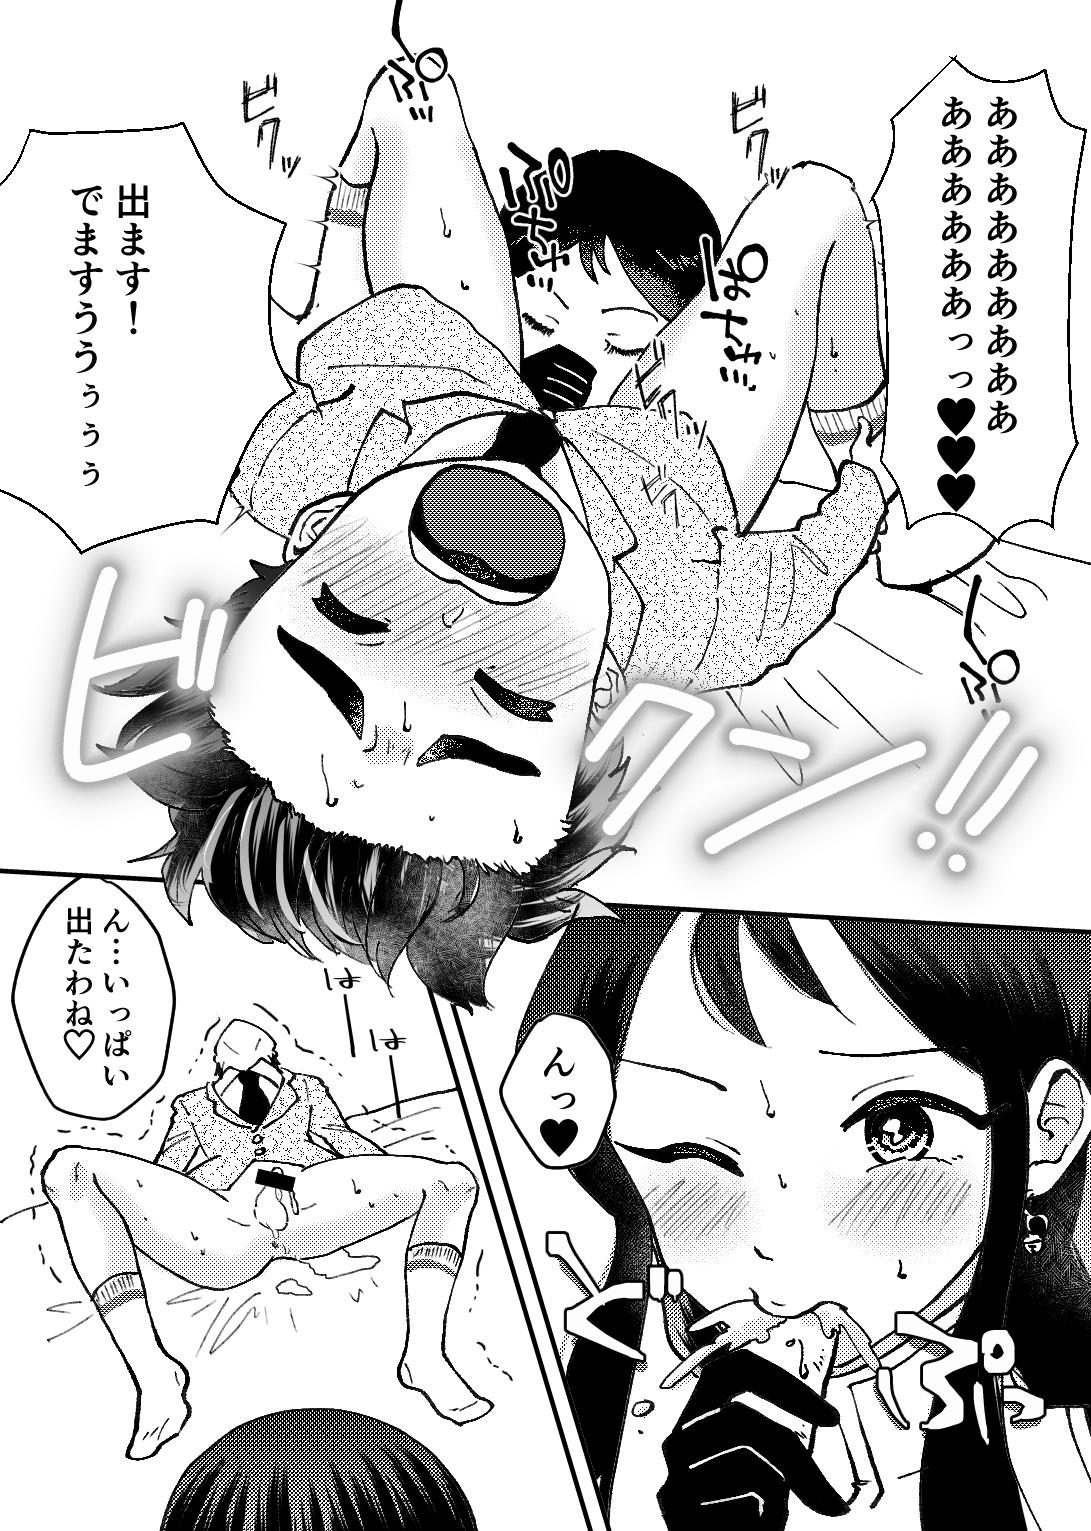 Sixtynine Shikyuu ga Seishi suru Hi - Giant robo Carro - Page 2